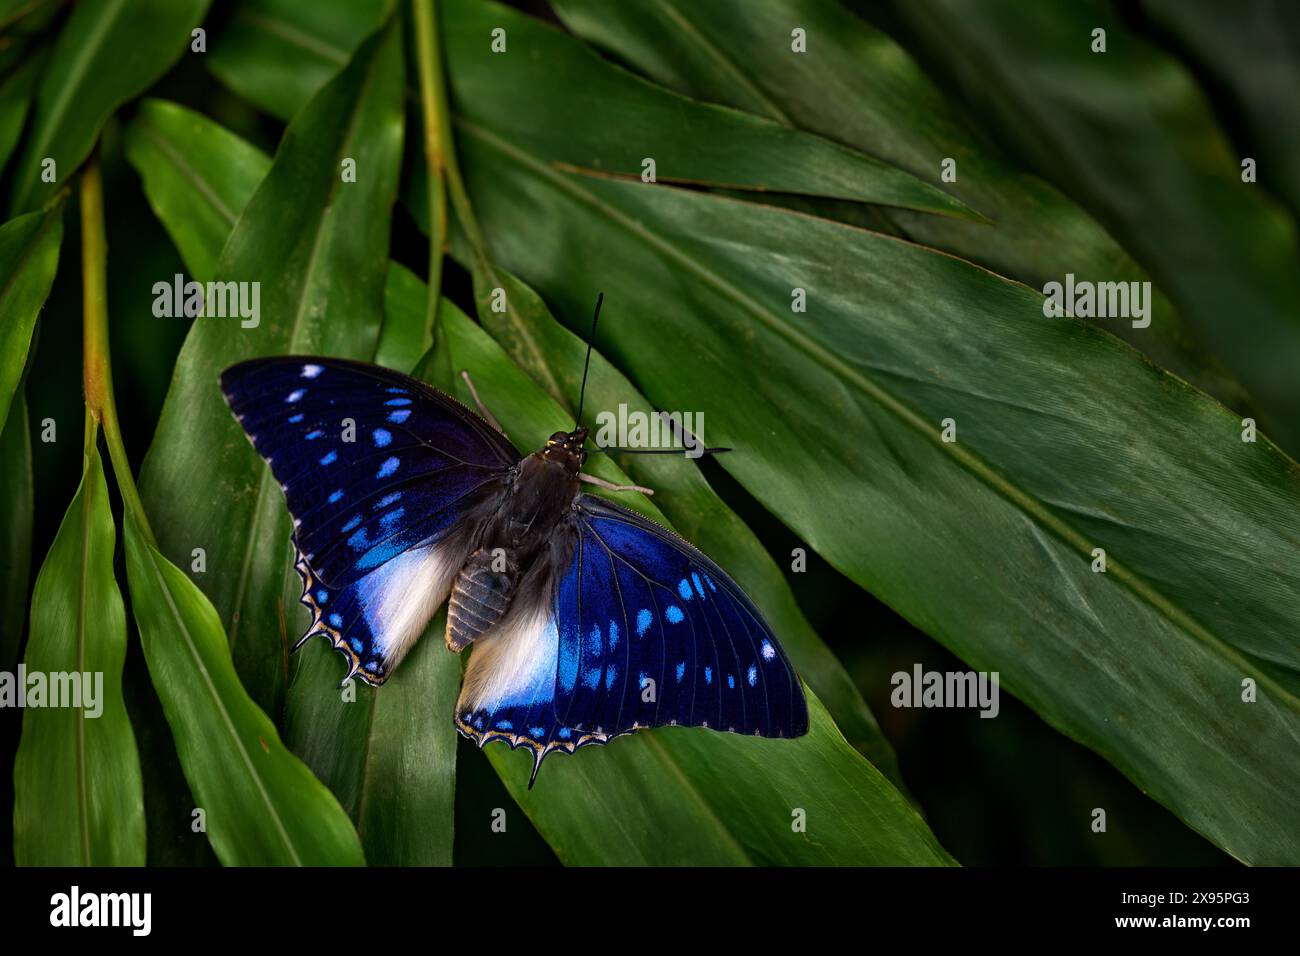 Blaugefleckte Charaxes, Charaxes cithaeron, blauweißer Schmetterling der Familie Nymphalidae, Südafrika. Wunderschöner Schmetterling, der auf dem grünen Blatt sitzt Stockfoto